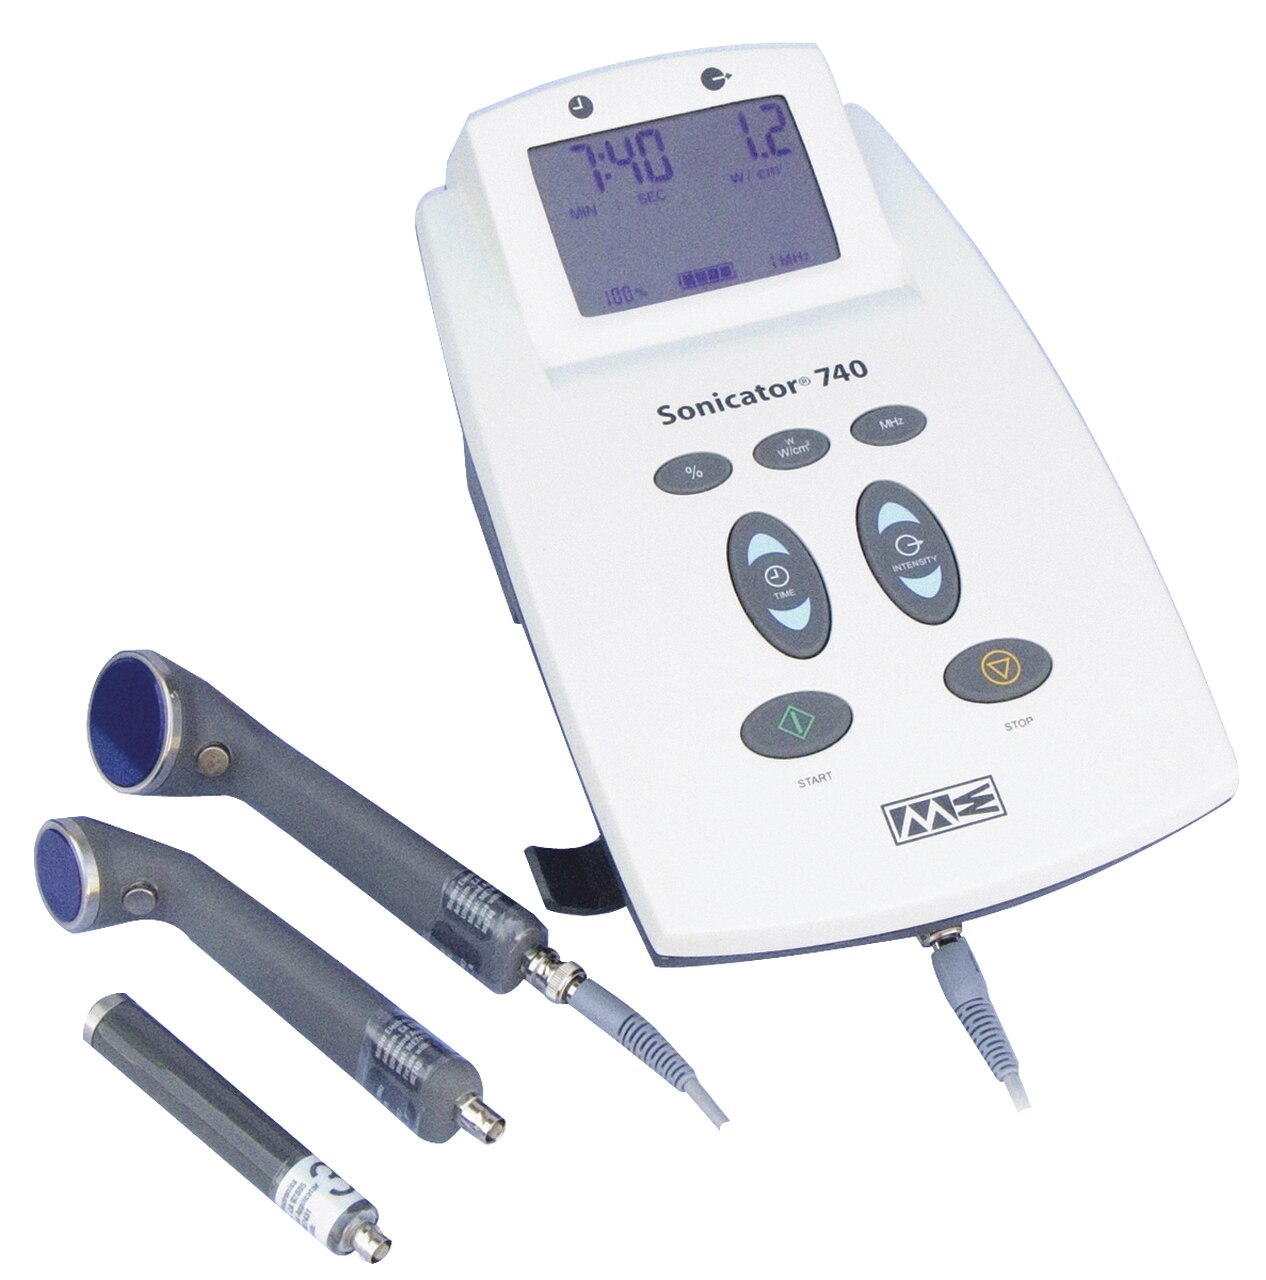 Therapeutischer Ultraschall: Mettler Sonicator® 740